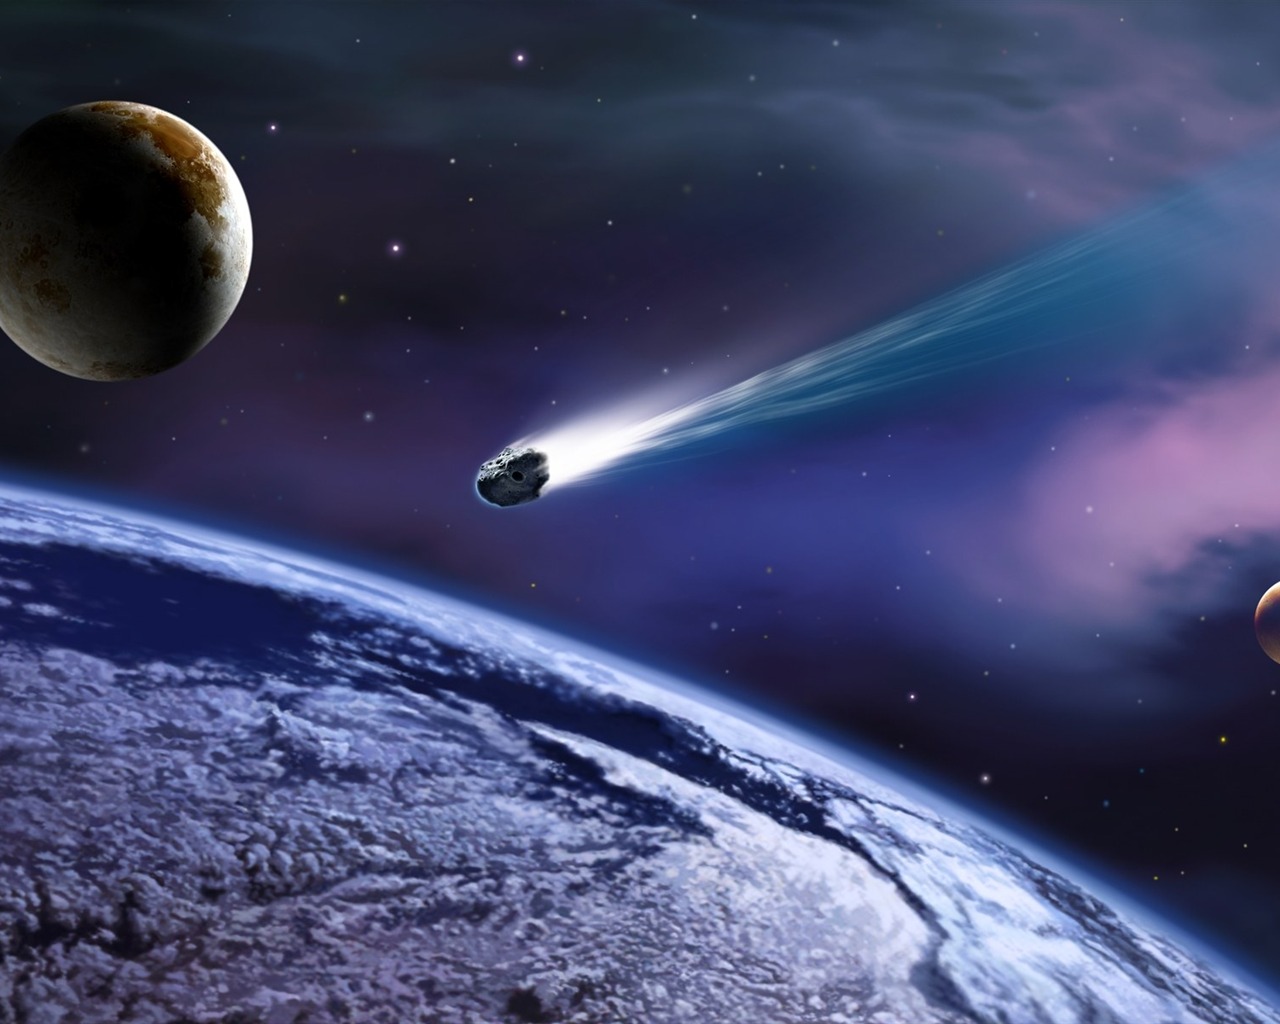 Toro si avvicina alla Terra: un frammento dell’asteroide colpì una donna nel 1954